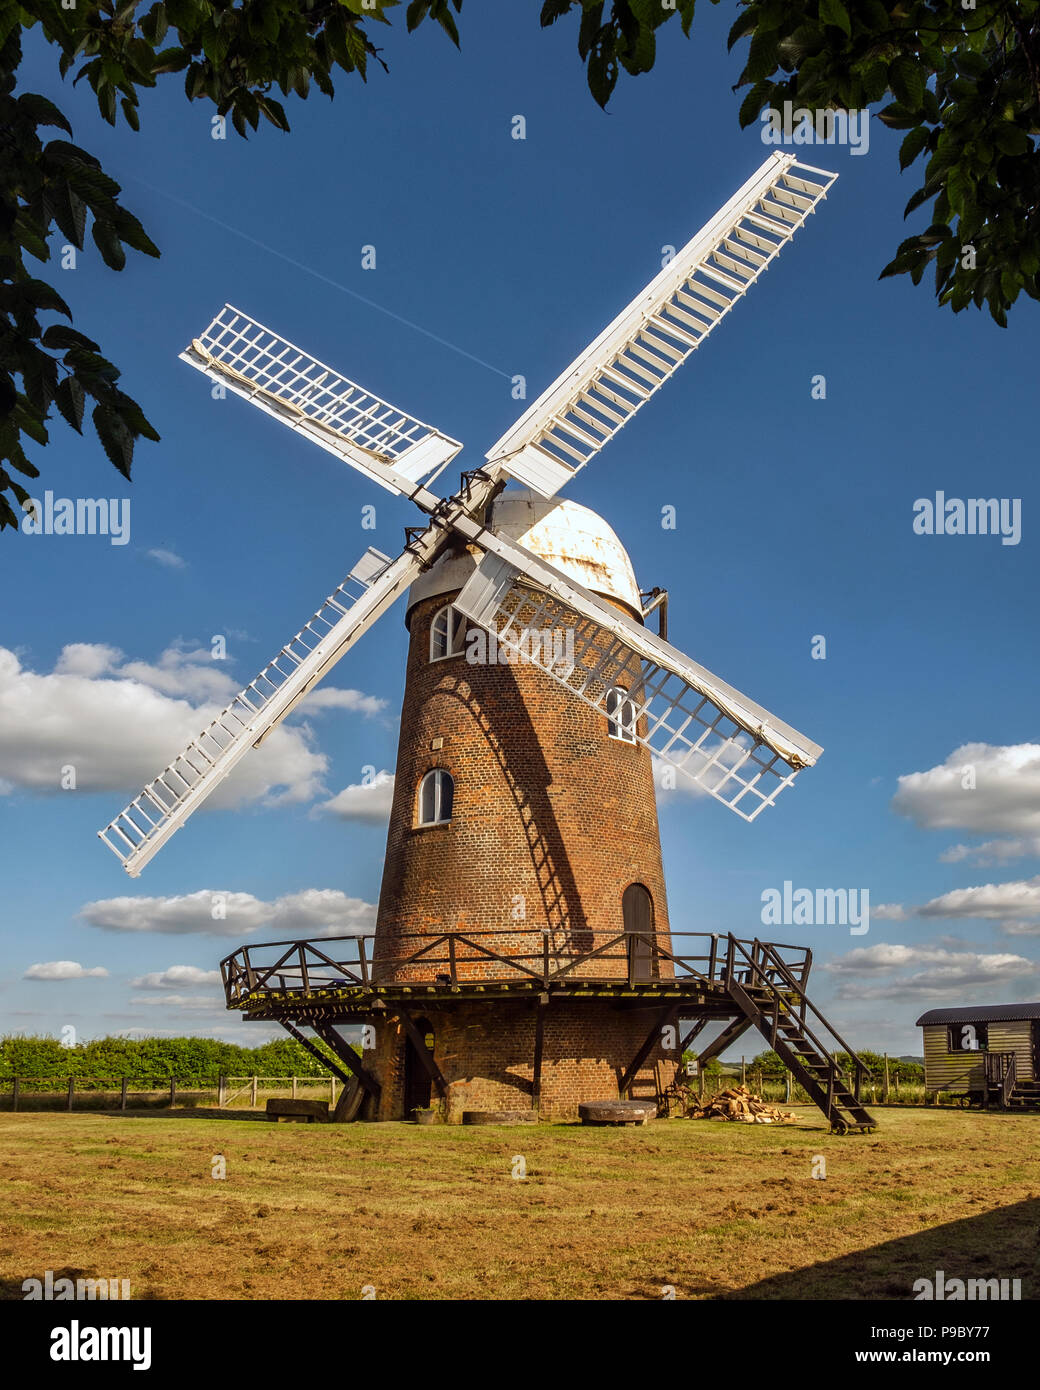 Wilton windmill, una torre in stile georgiano mulino costruito nel 1821 e restaurato nel 1976 è istituito un punto di riferimento e di attrazione turistica nel cuore del Wiltshire, Regno Unito Foto Stock